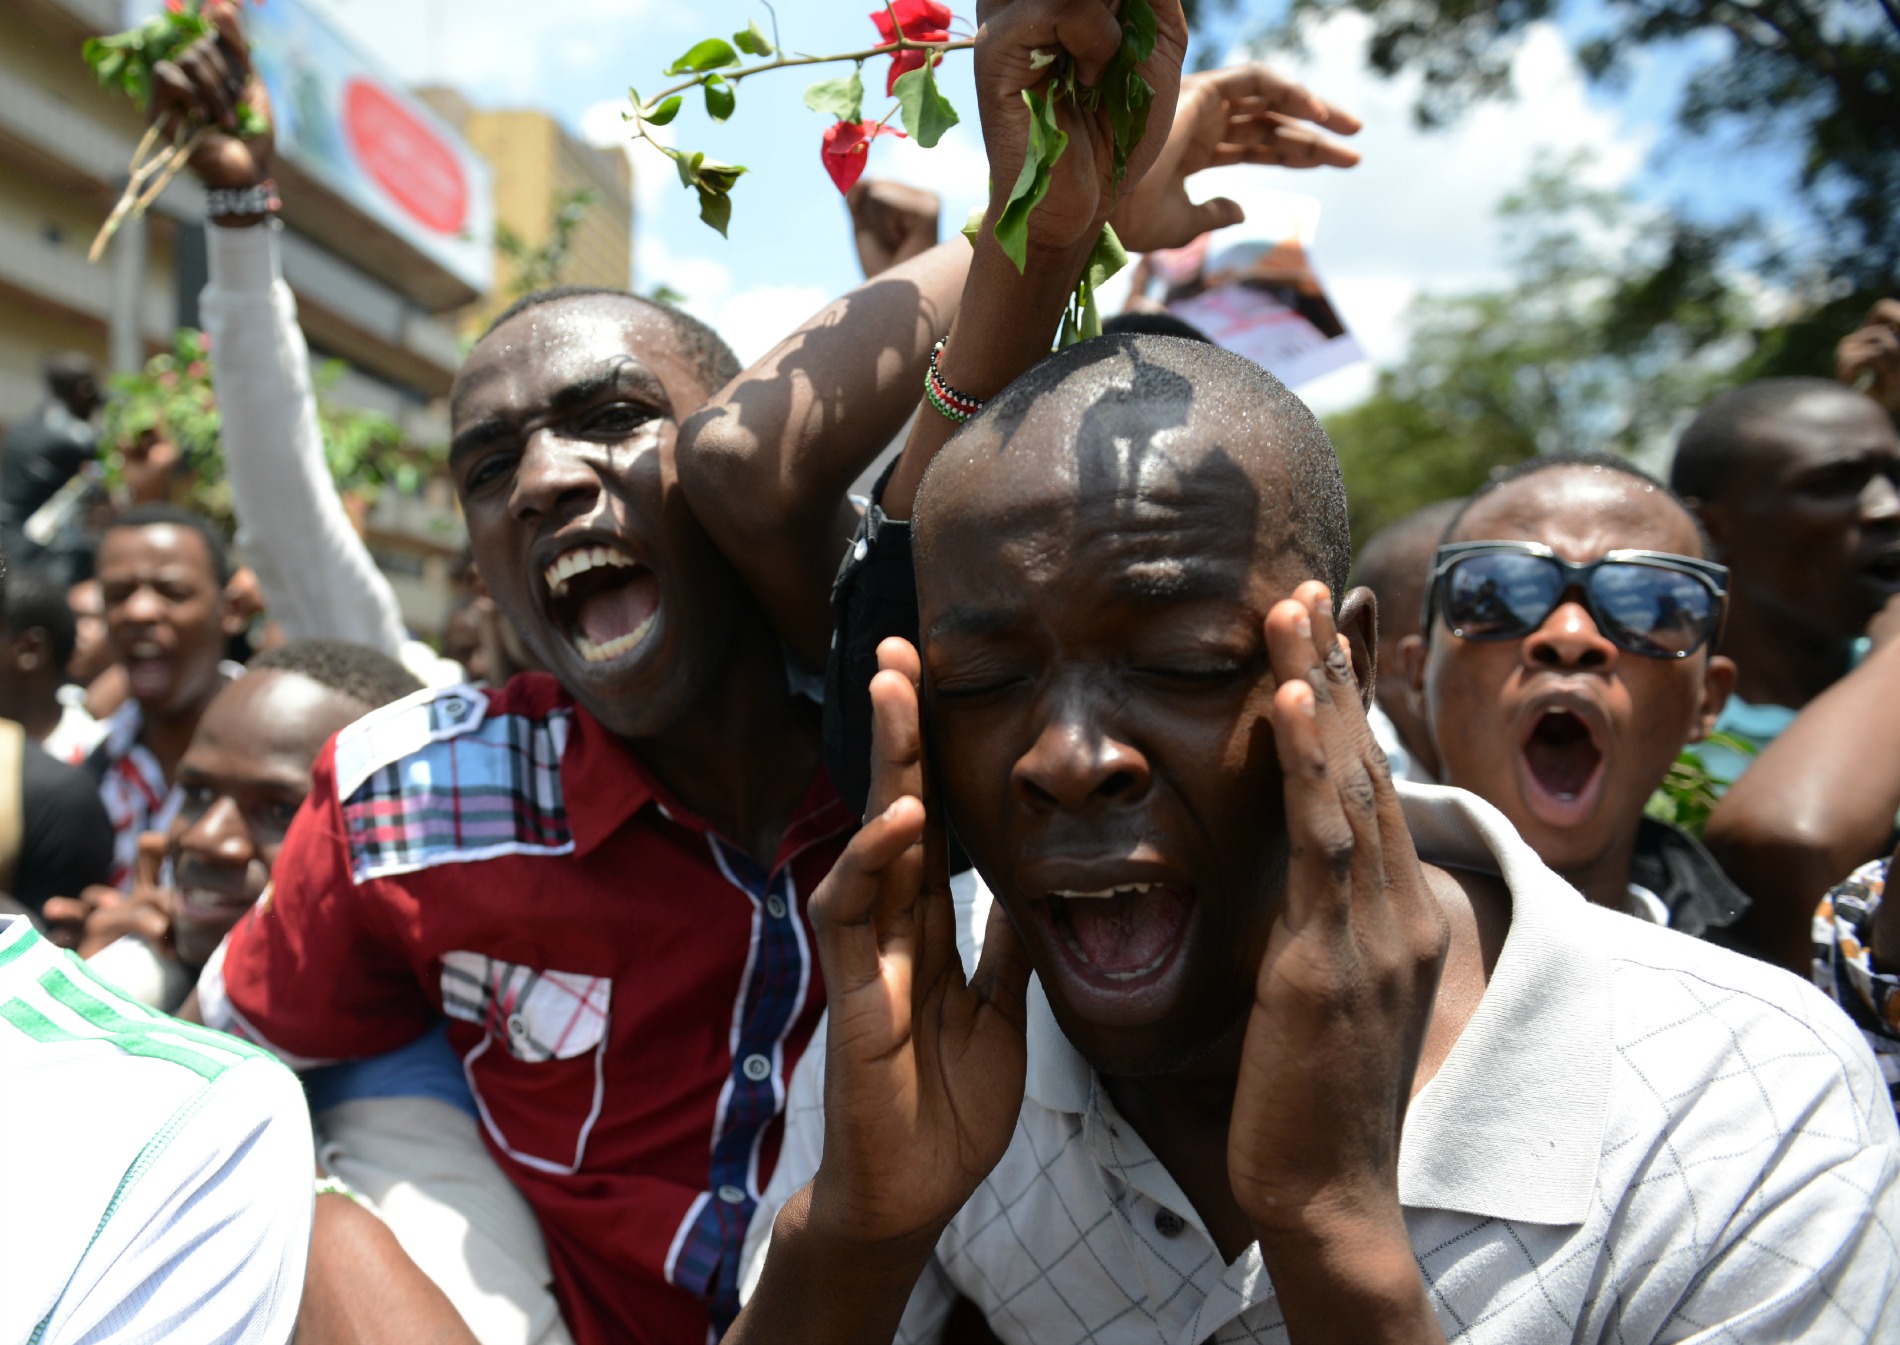 Kenia vs Charlie. Porque los negros y los pobres siempre serán relegados